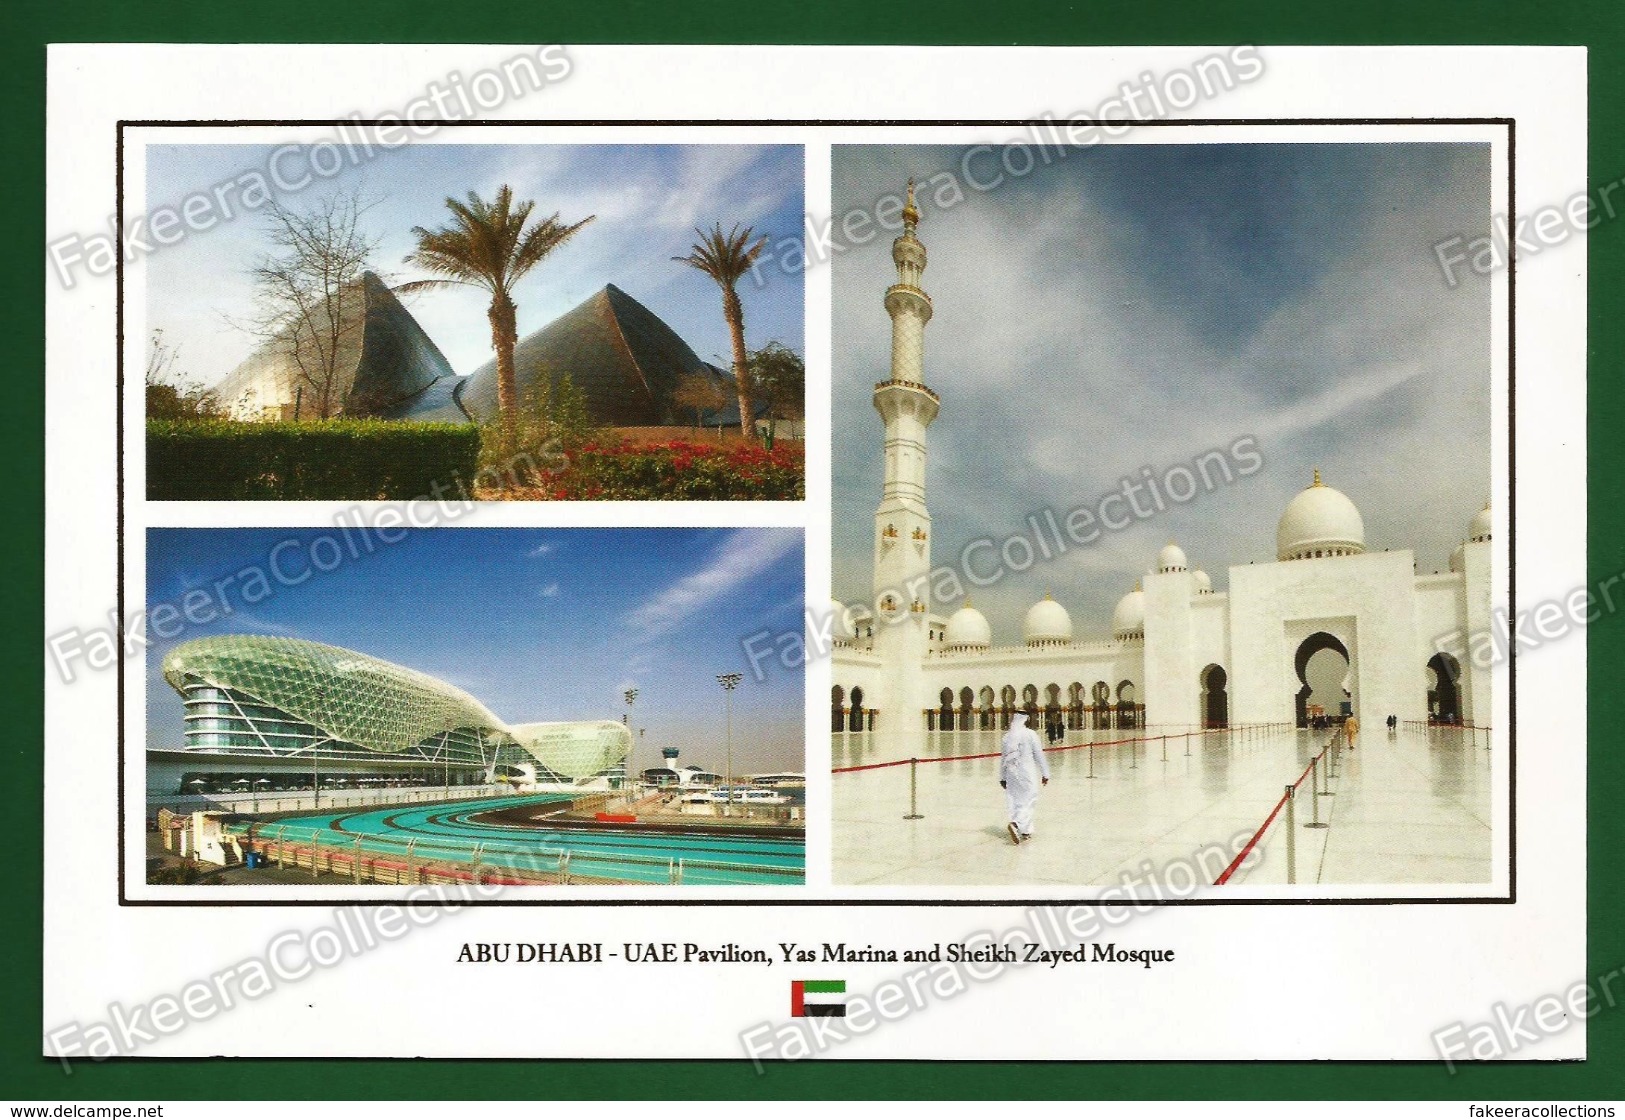 UNITED ARAB EMIRATES / UAE - ABU DHABI Pavilion, Yas Marina And Sheikh Zayed Mosque - Postcard # 48 - Unused As Scan - Emirats Arabes Unis